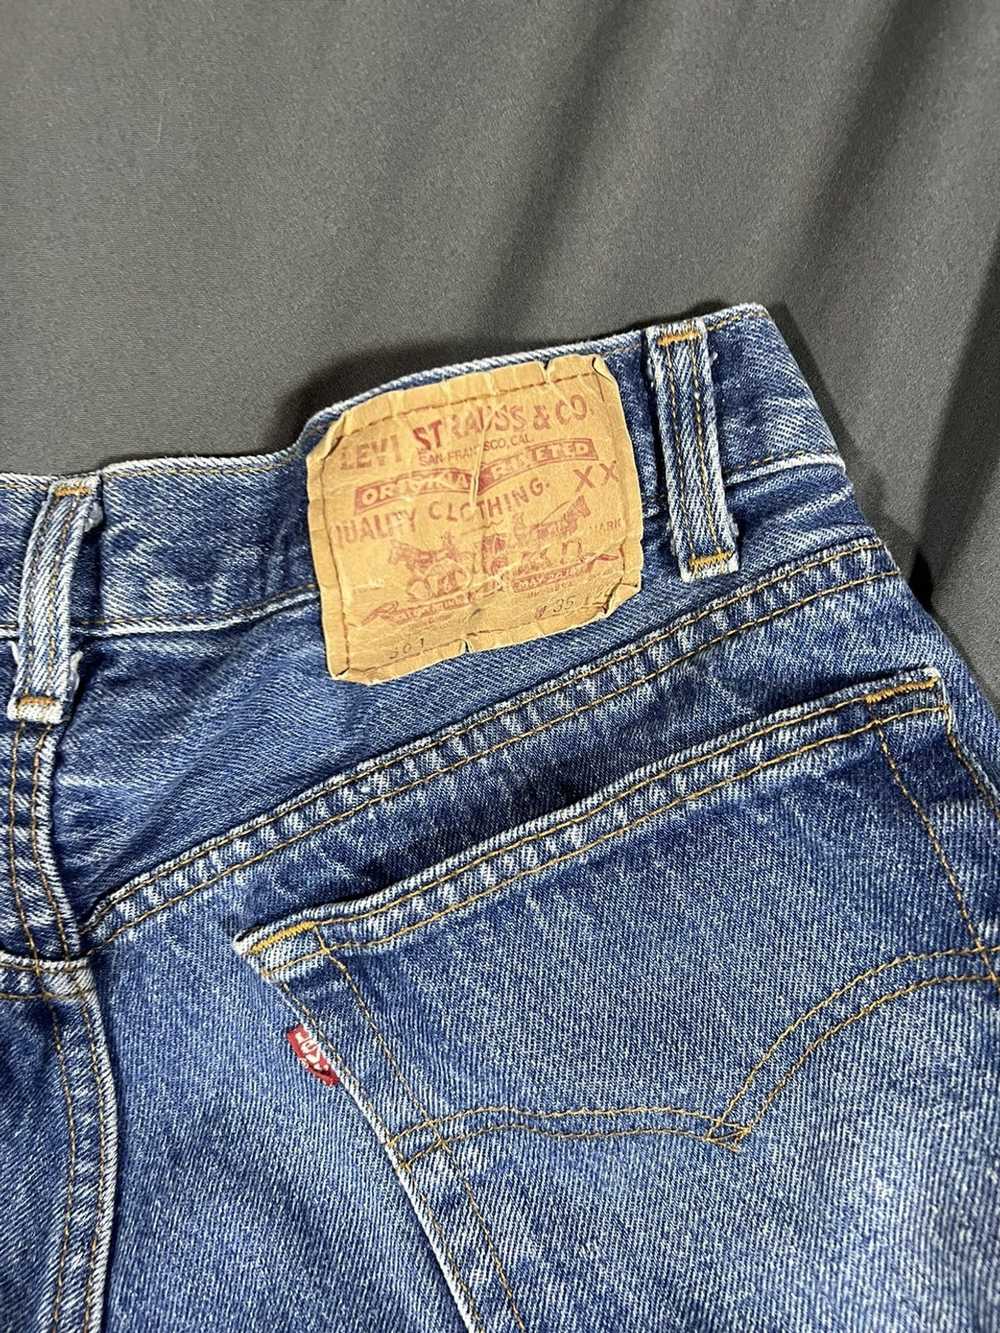 Levi's Levi’s 501 jeans - image 4